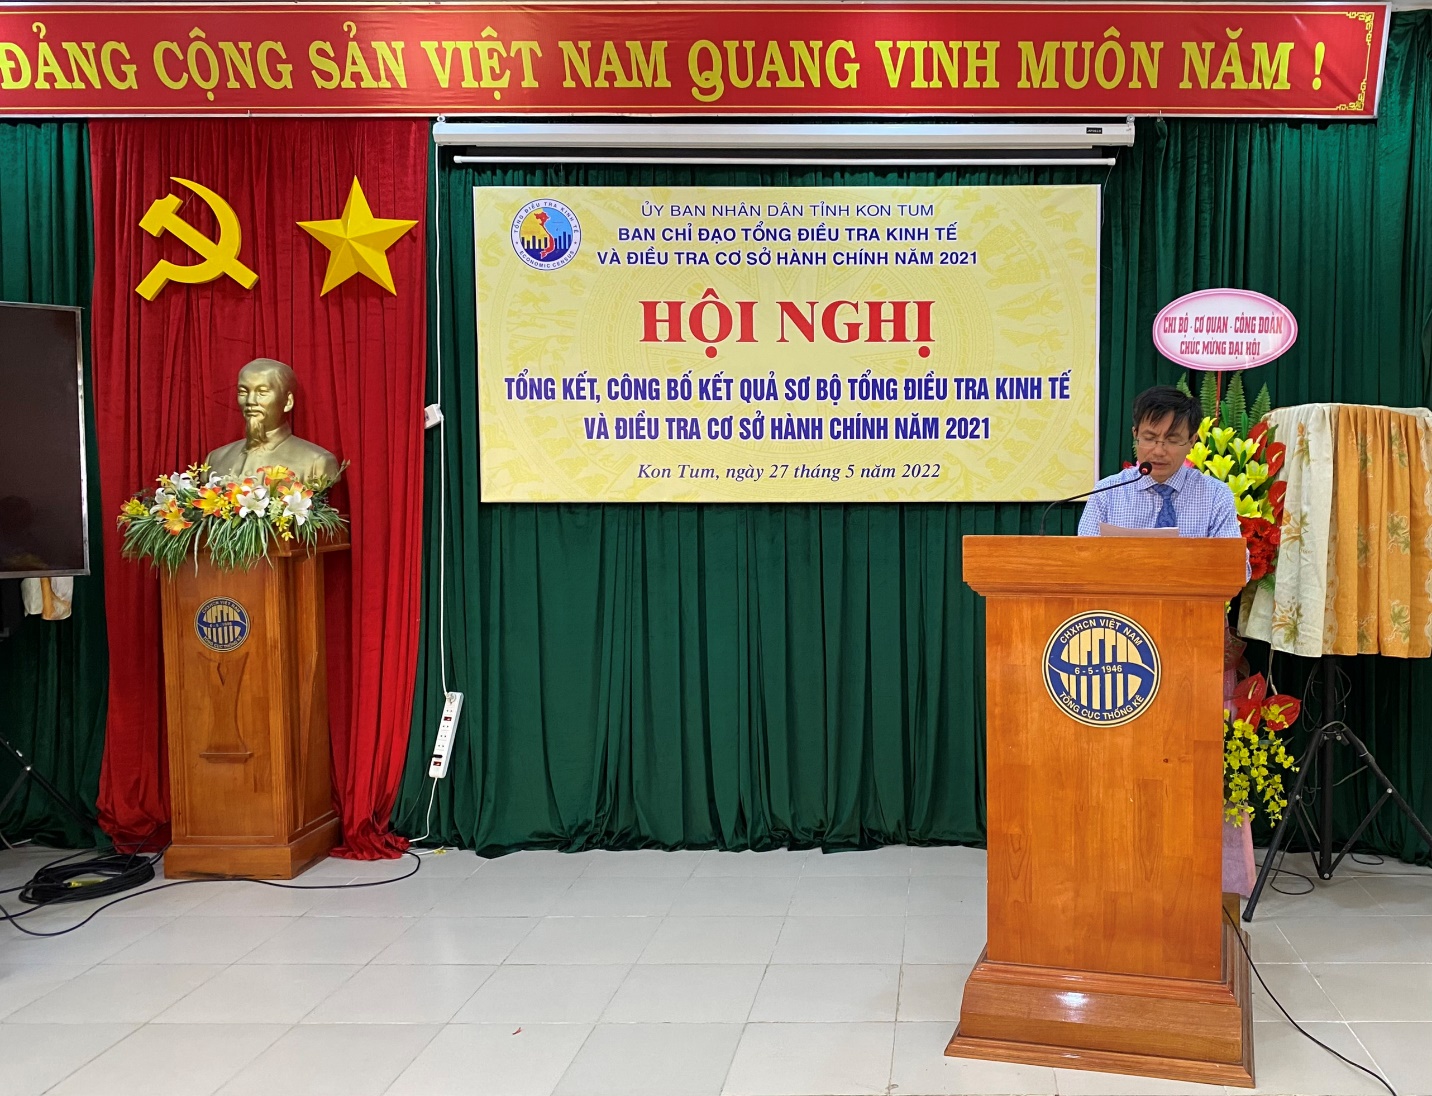 Hội nghị Tổng kết và công bố kết quả sơ bộ Tổng điều tra kinh tế và Điều tra cơ sở hành chính năm 2021 trên địa bàn tỉnh Kon Tum